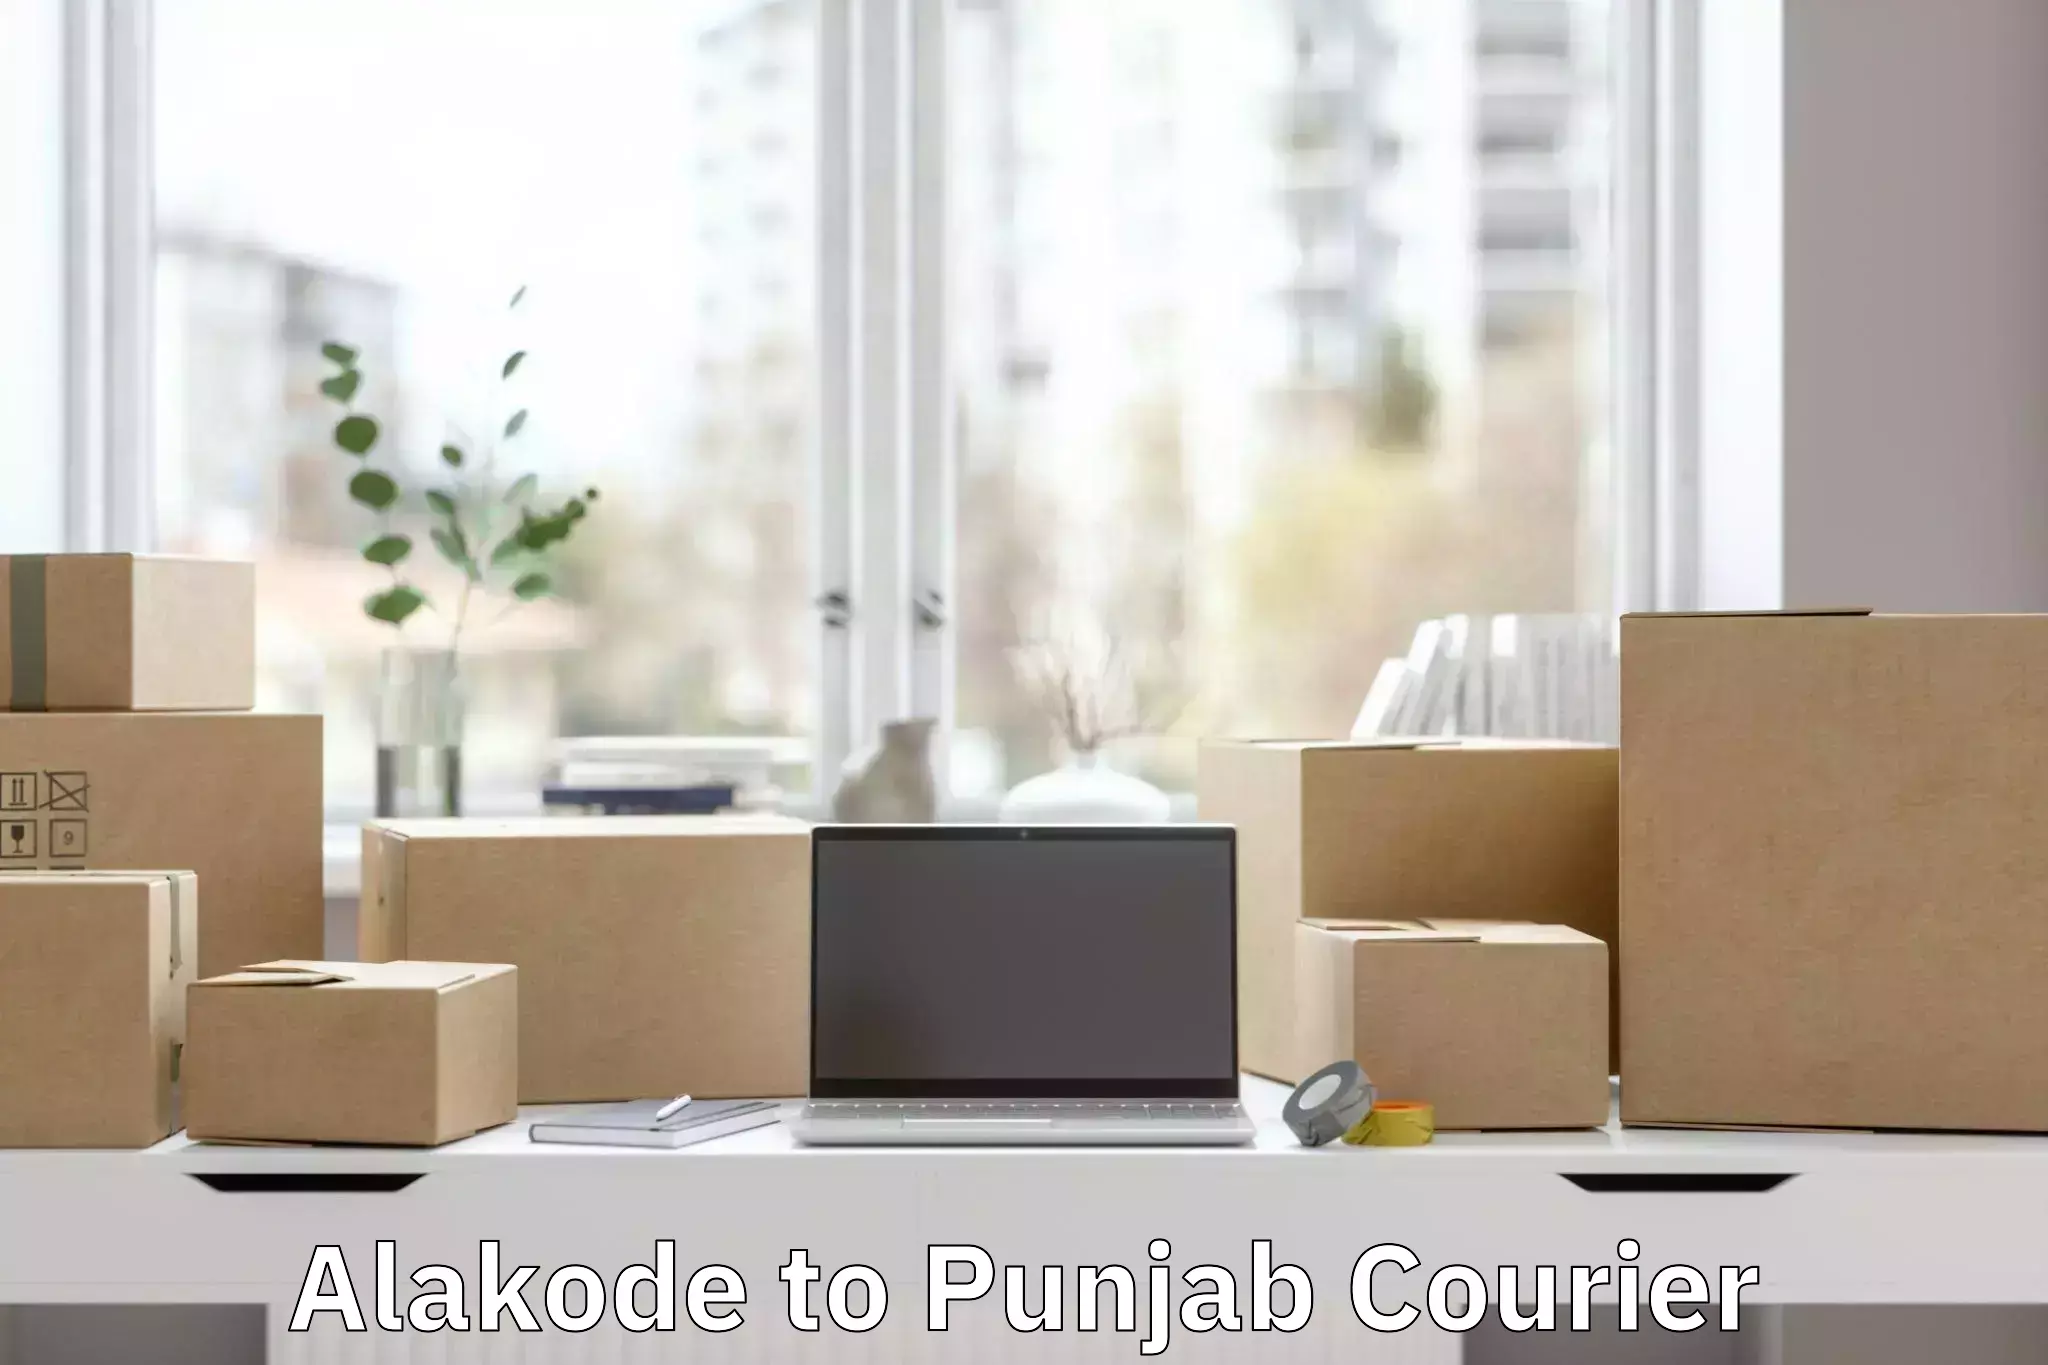 Luggage shipment processing in Alakode to Punjab